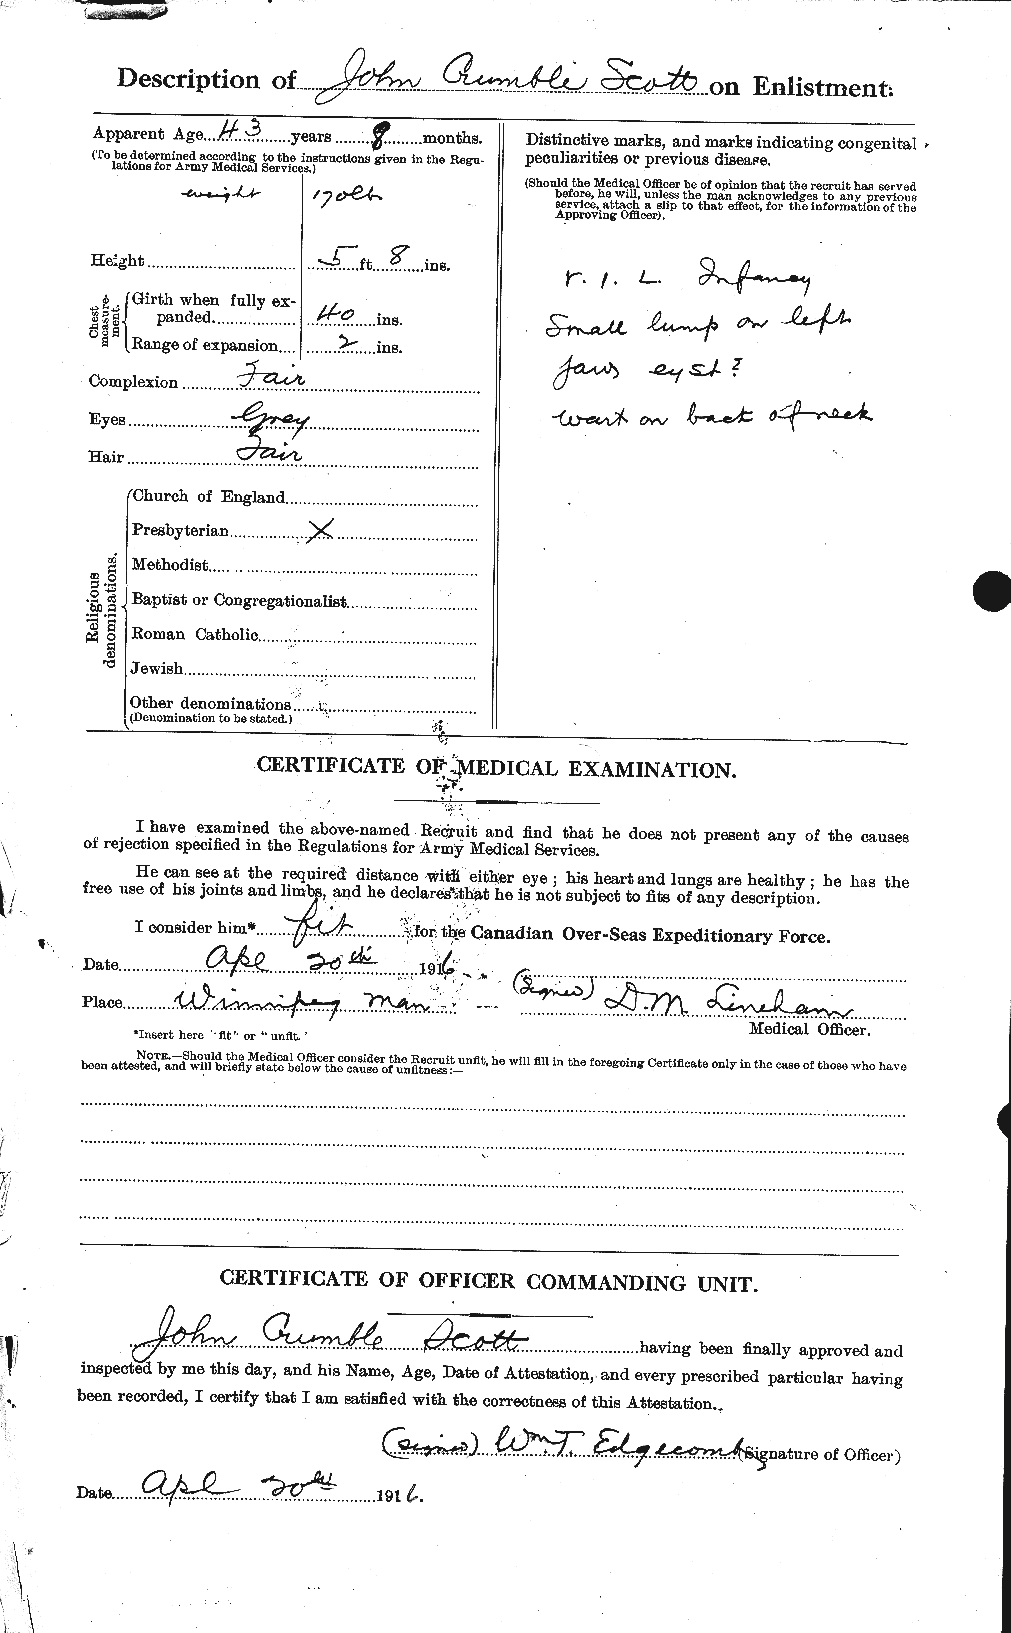 Dossiers du Personnel de la Première Guerre mondiale - CEC 084646b